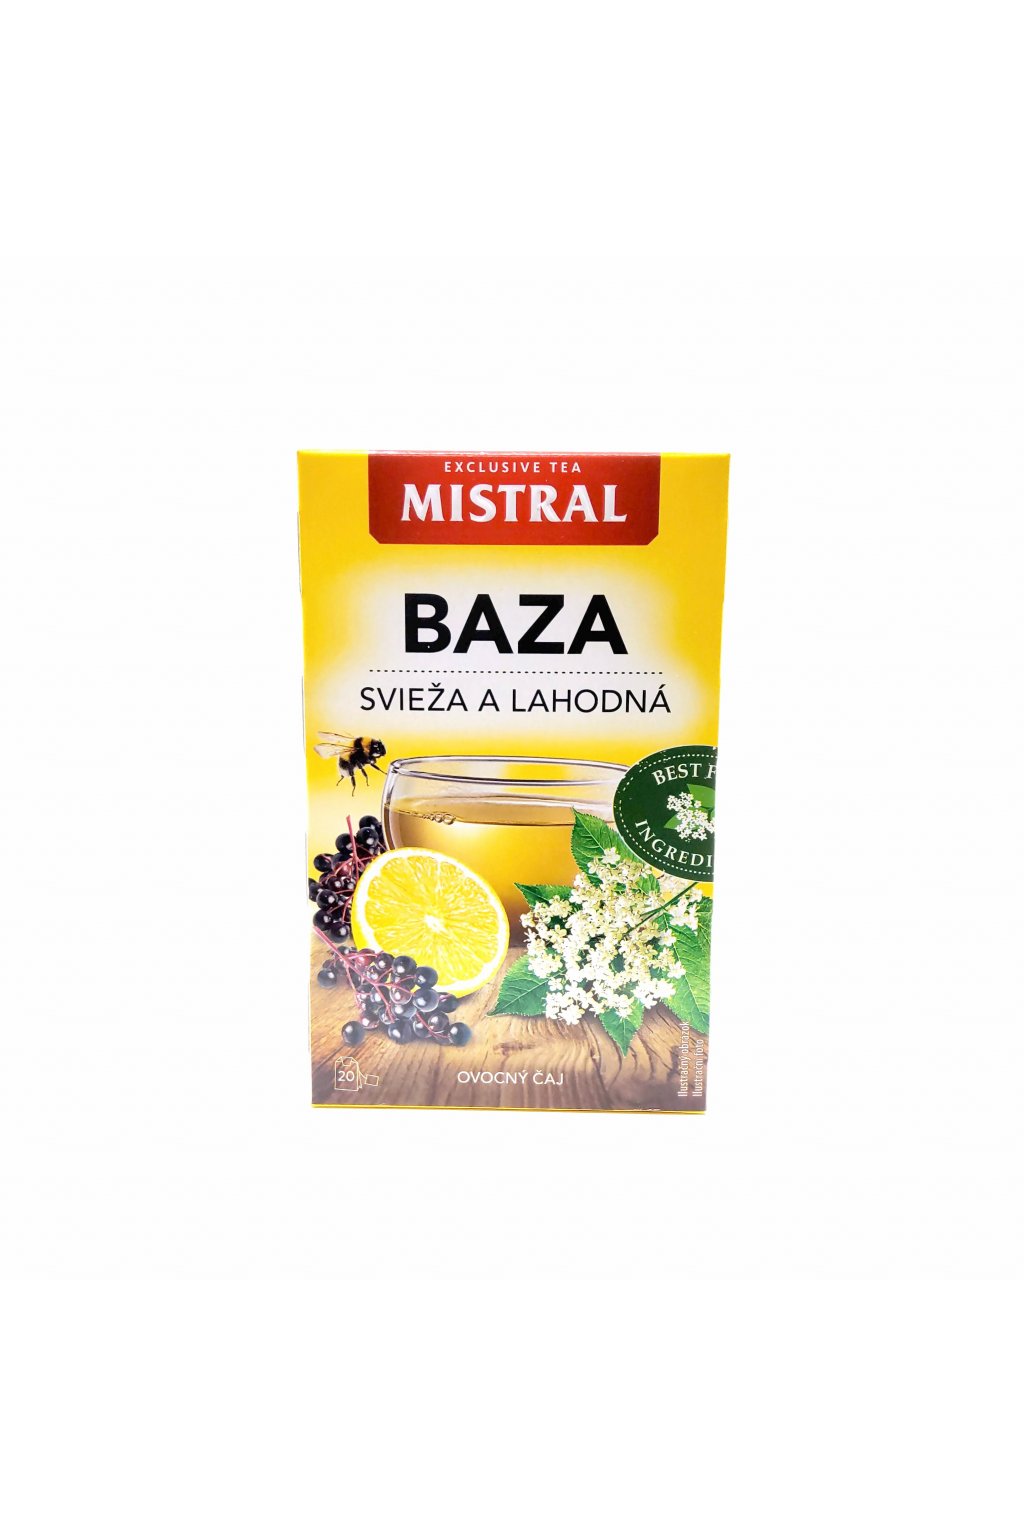 Mistral Baza ovocný čaj 20 x 2g